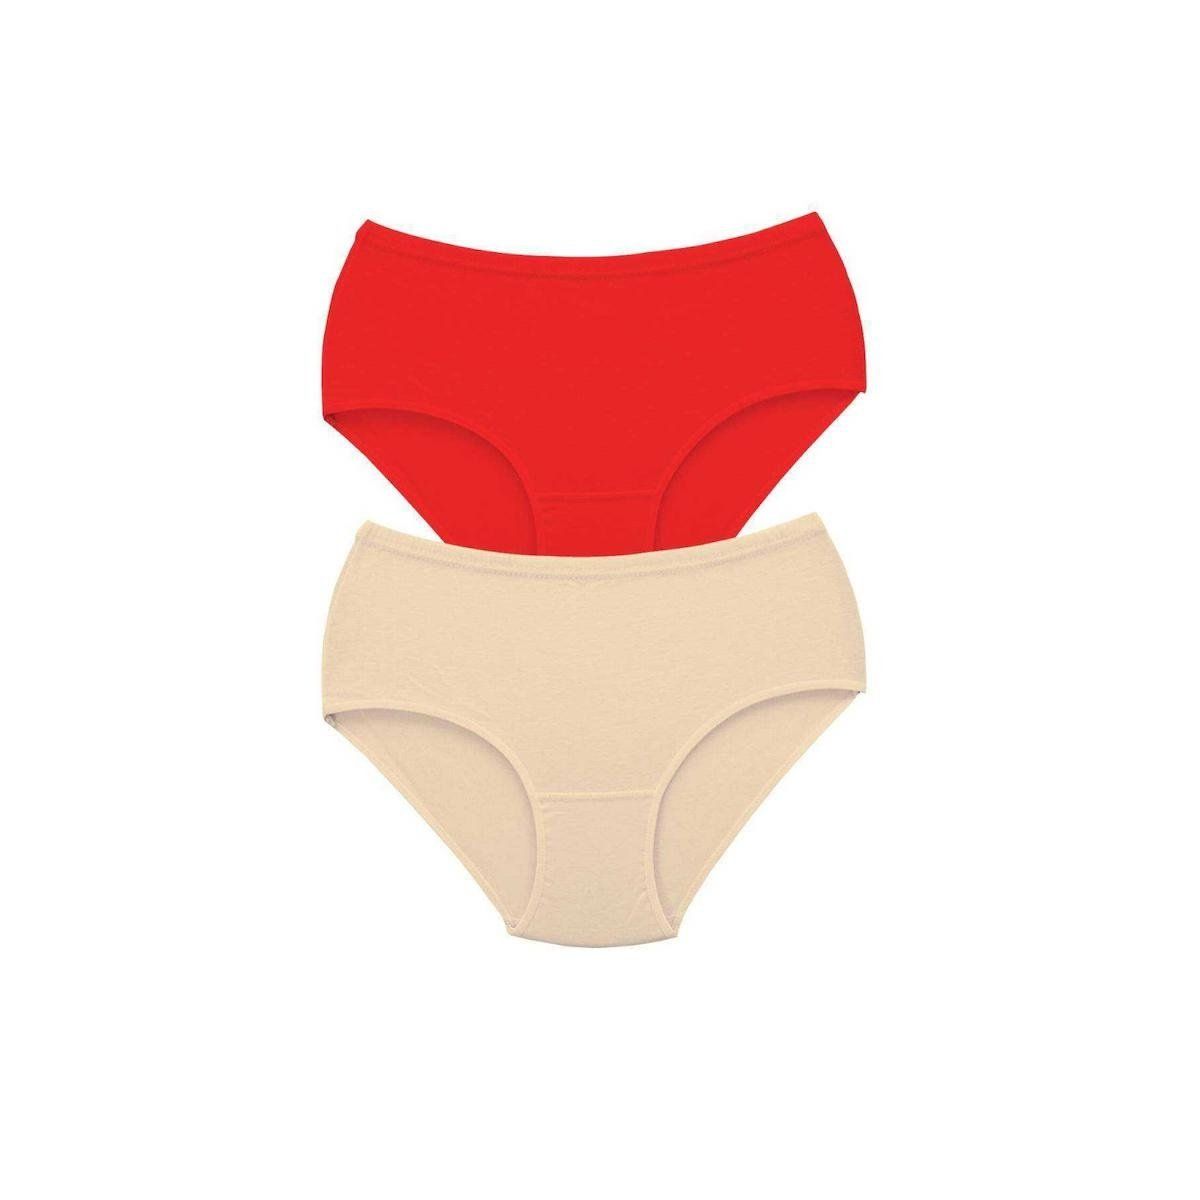 Women's red underwear png